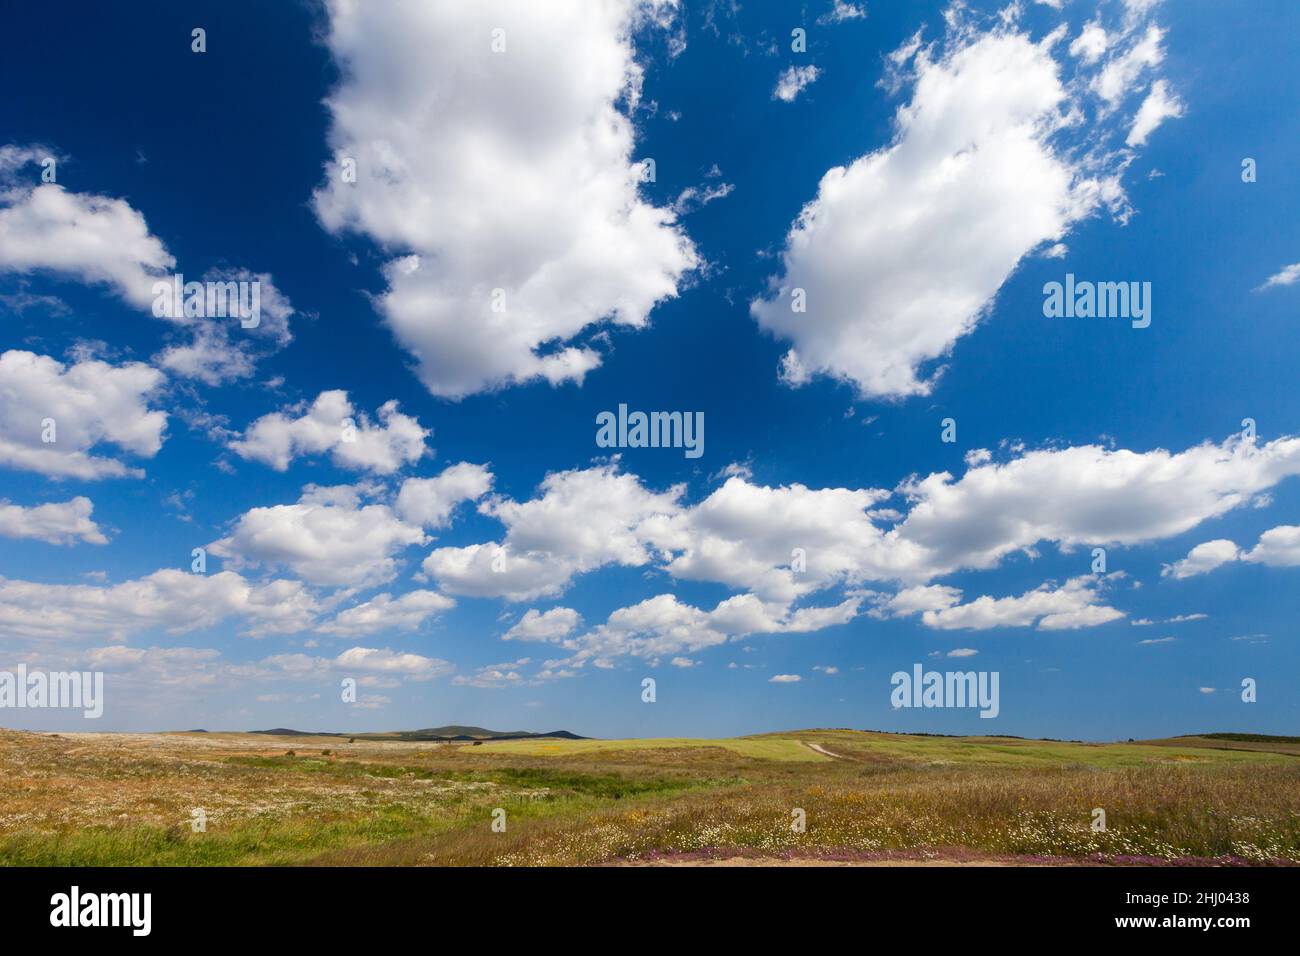 Nuages, nuages de bonne météo et paysage de pâturage ouvert, Castro Verde, Alentejo, Portugal Banque D'Images